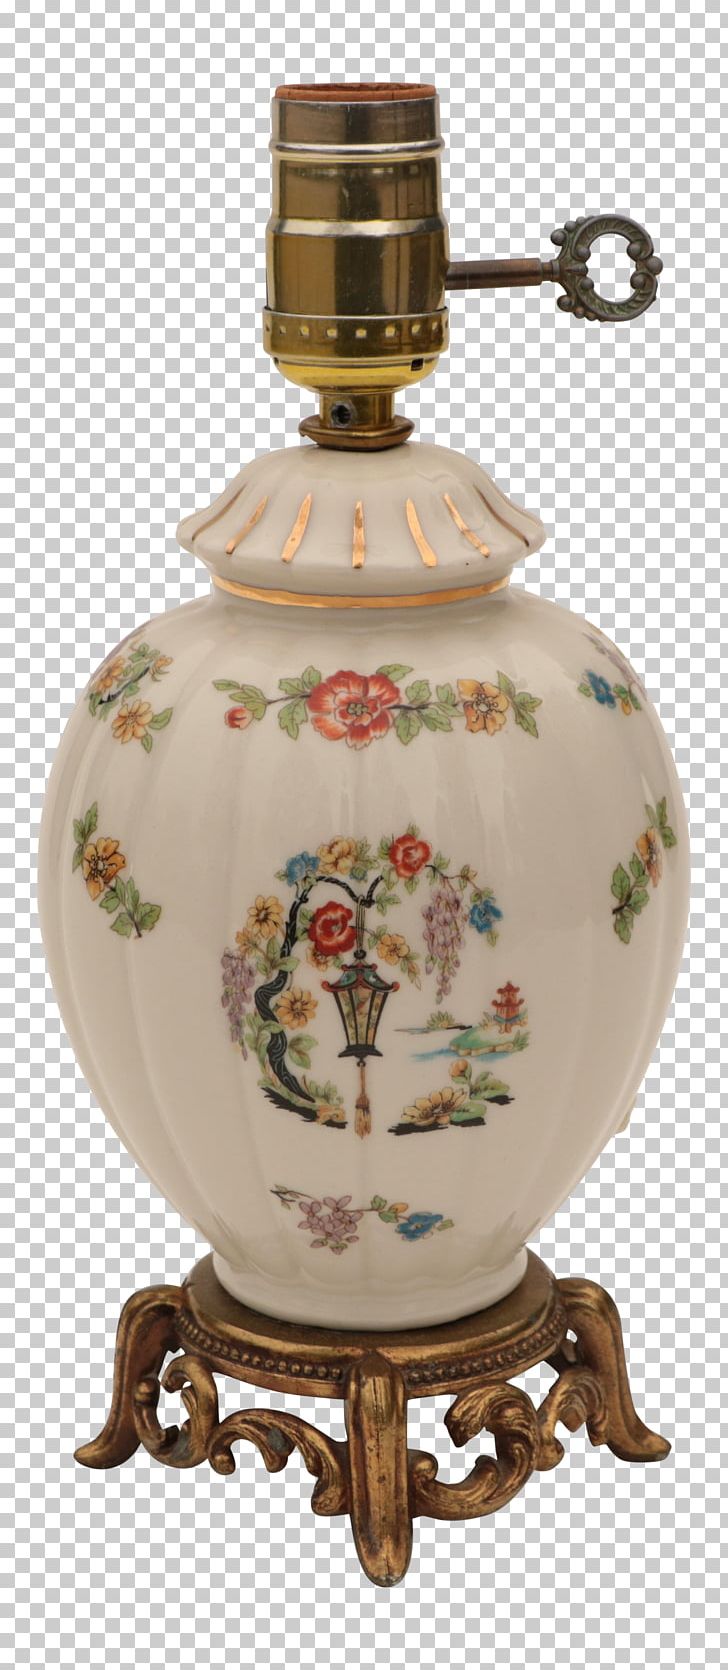 Ceramic Glass Bottle Porcelain Vase Tableware PNG, Clipart, Artifact, Barware, Bottle, Ceramic, Chinese Lantern Free PNG Download